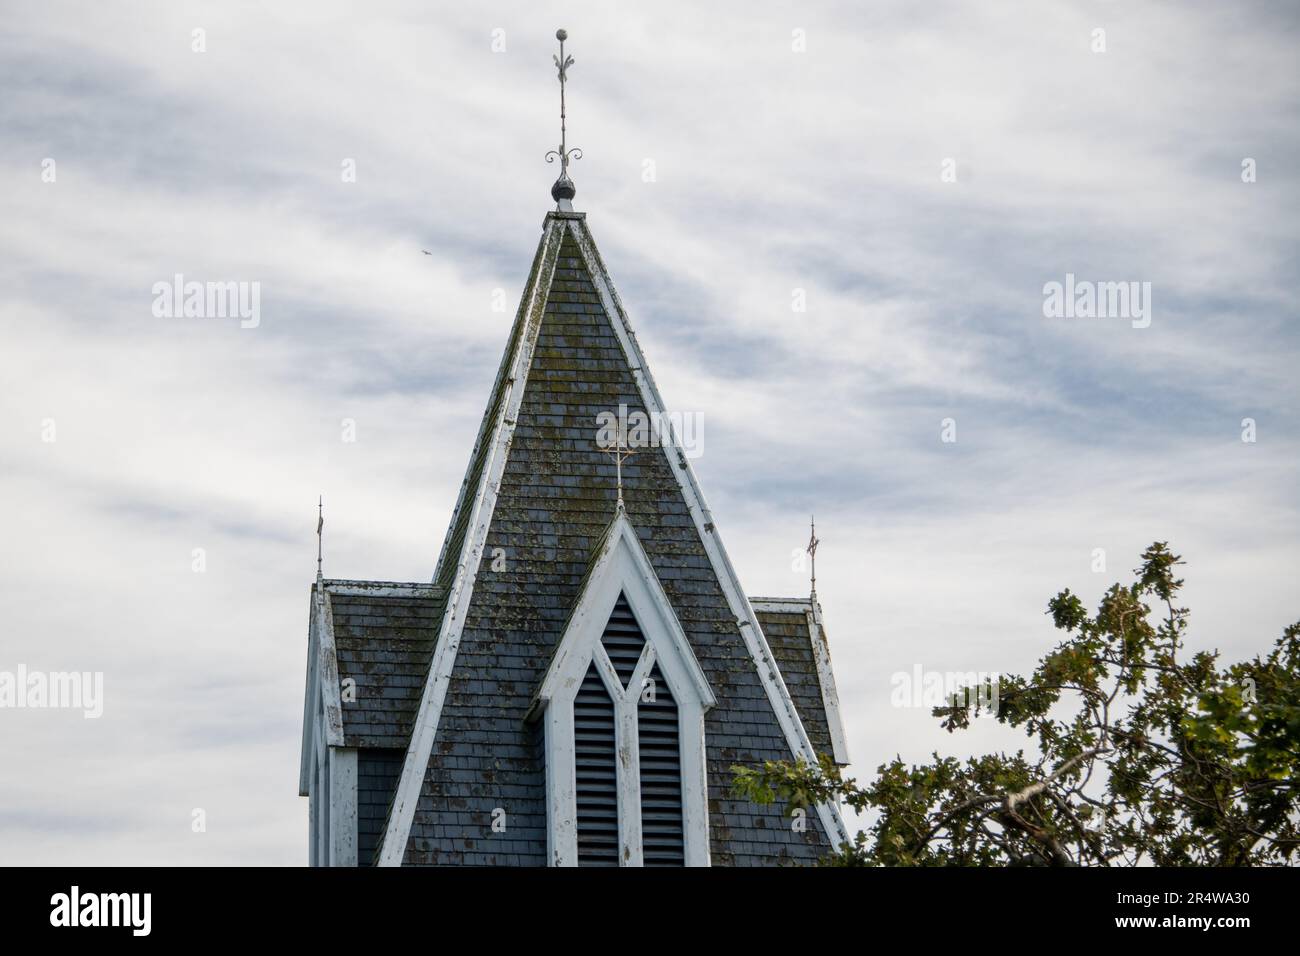 Une place catholique en bois de couleur bleu foncé est le clocher d'un bâtiment religieux. Les fenêtres extérieures décoratives sont dotées de garnitures blanches. Il y a un grand arbre à côté Banque D'Images